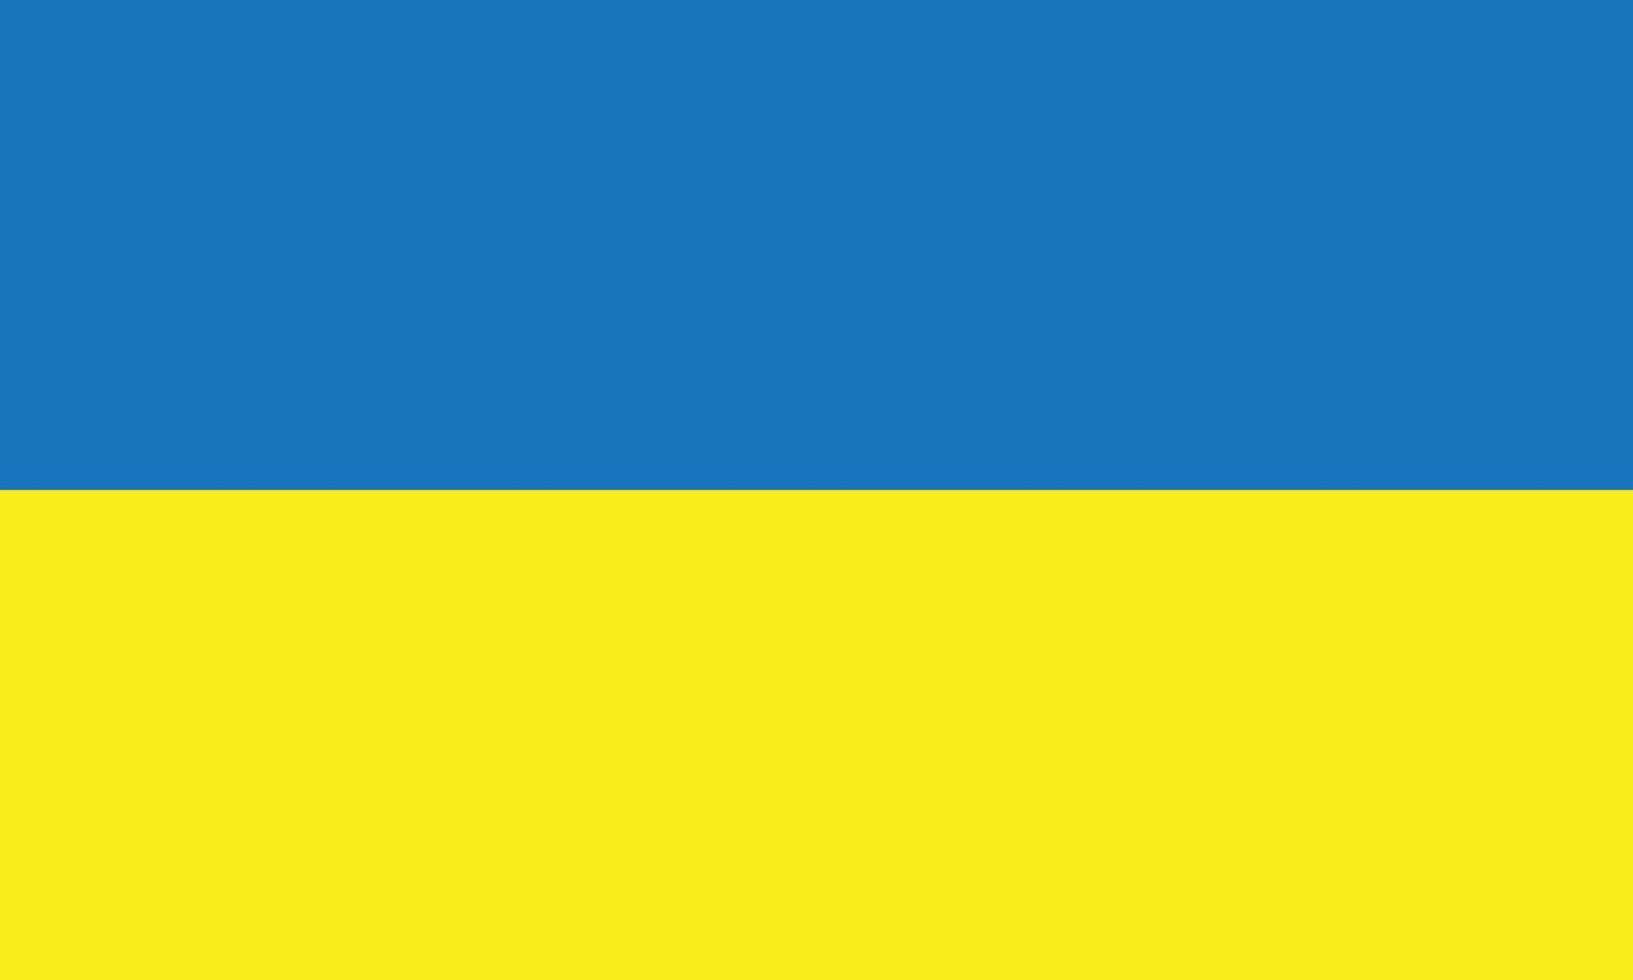 eps10 vector azul y amarillo icono de la bandera de ucrania. símbolo de la bandera nacional ucraniana en un estilo moderno y plano simple para el diseño de su sitio web, logotipo, pictograma, interfaz de usuario y aplicación móvil